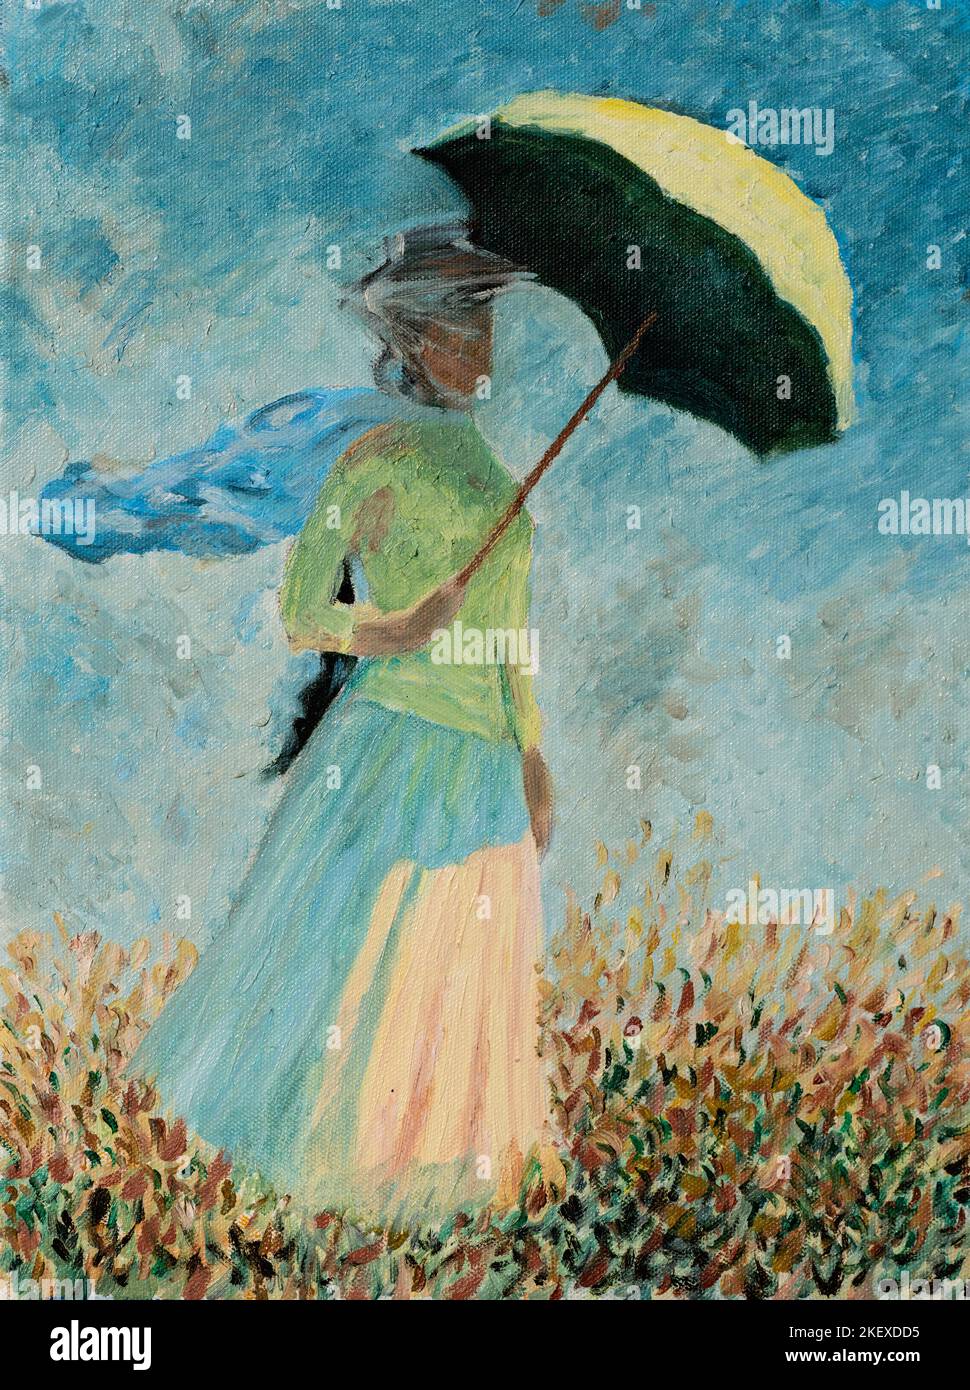 Pittura ad olio riproduzione di una donna con Un Parasol o Studio di Una figura all'aperto di fronte a destra famosa pittura ad olio di Claude Monet. Foto Stock